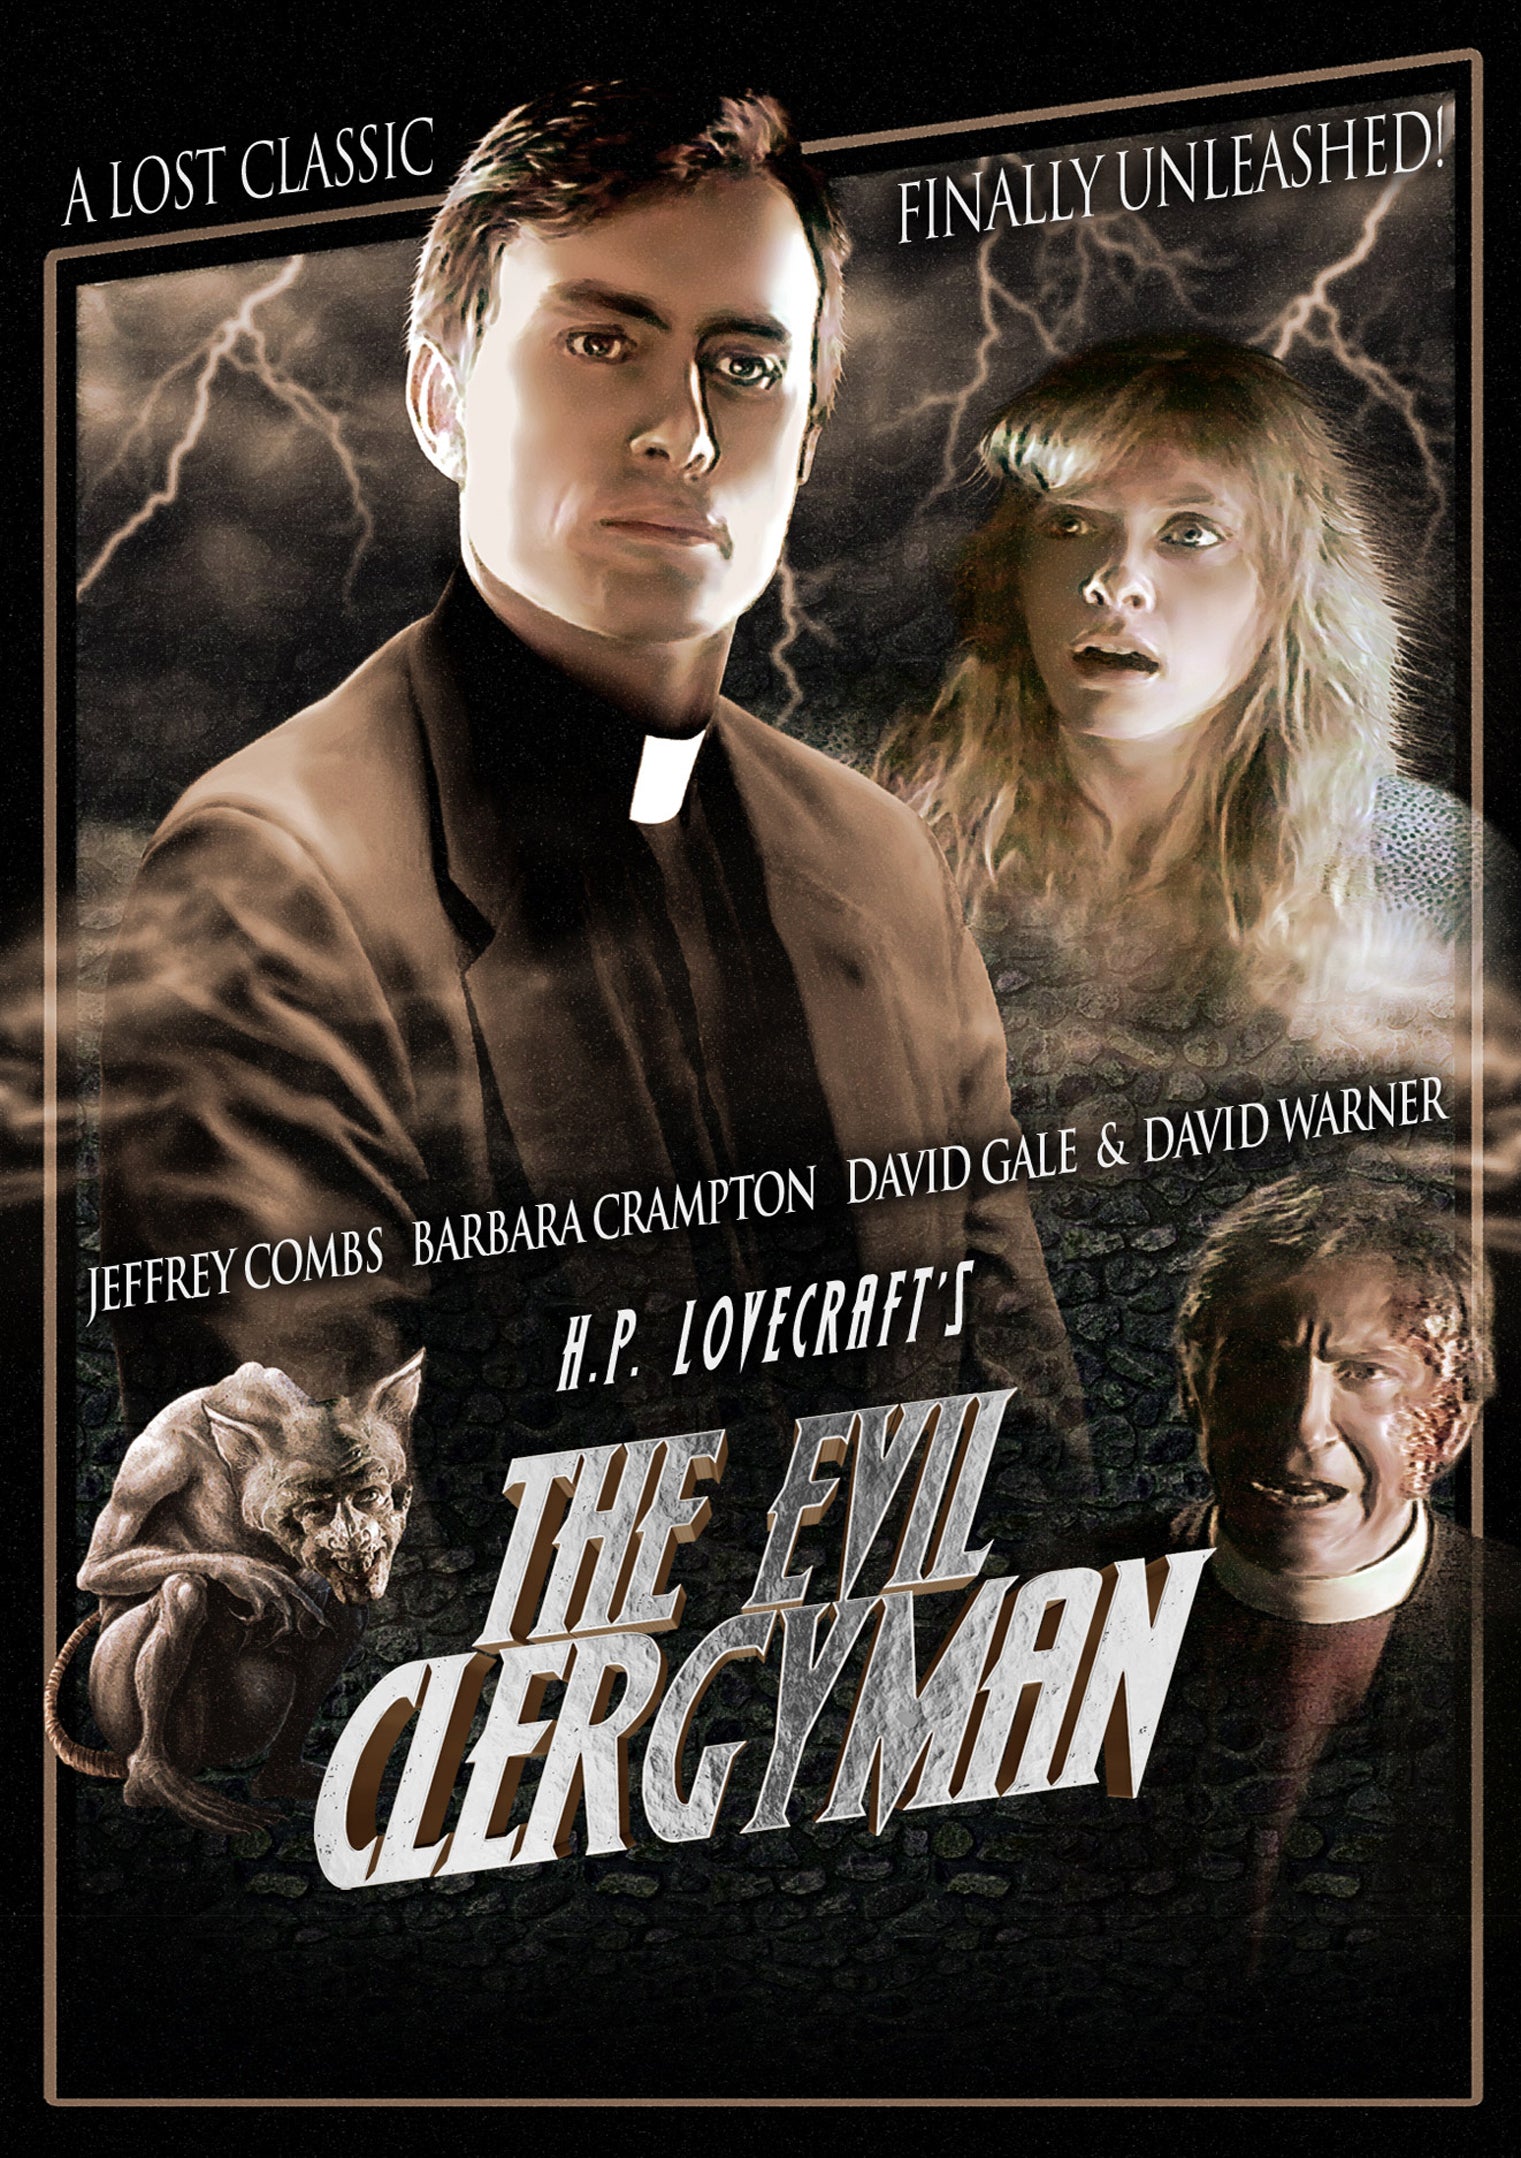 THE EVIL CLERGYMAN DVD